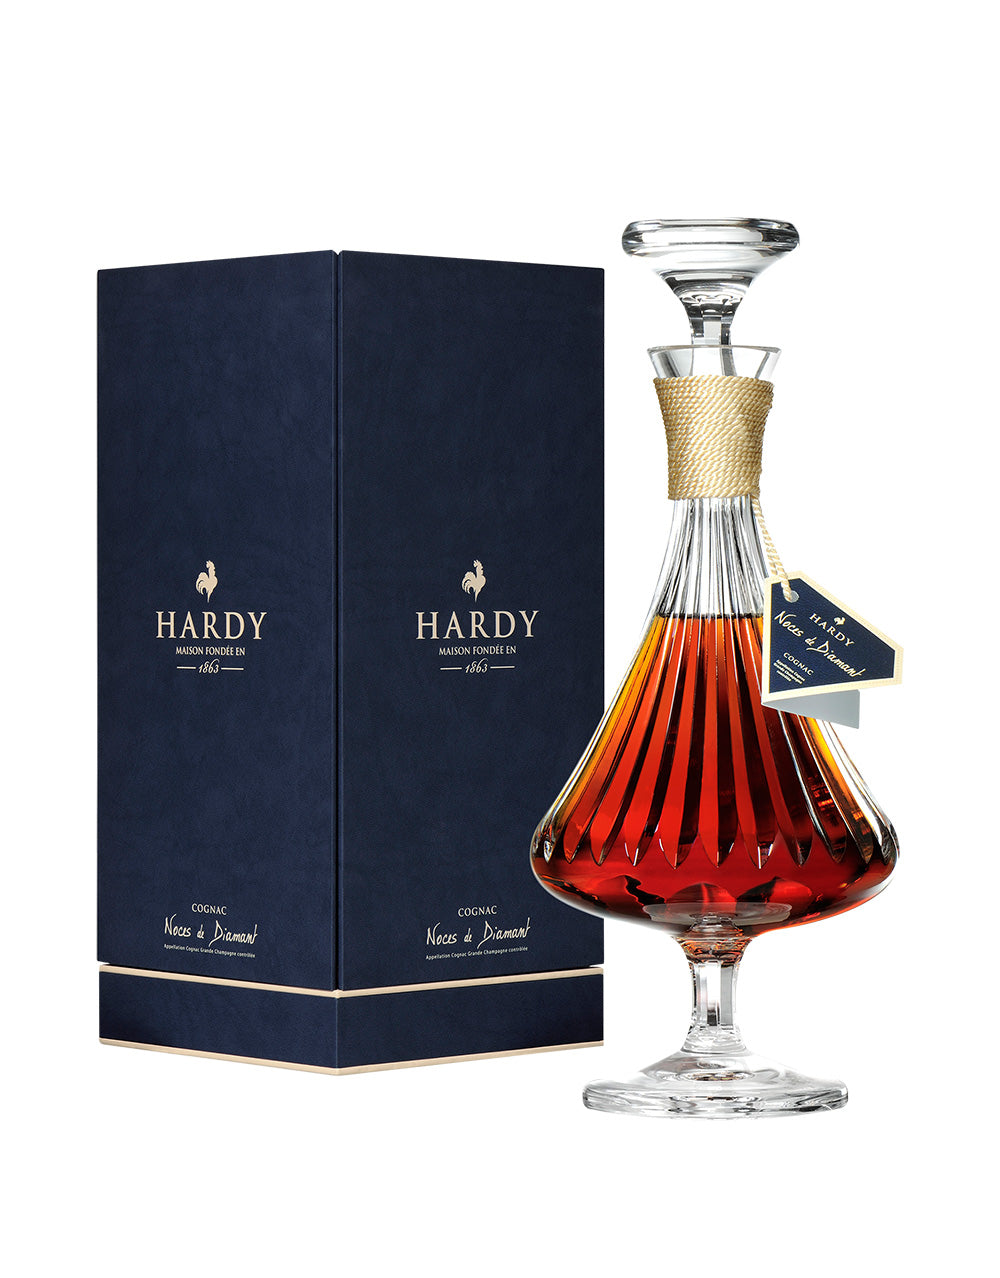 Hardy Noces Diamant 60YR Old Cognac